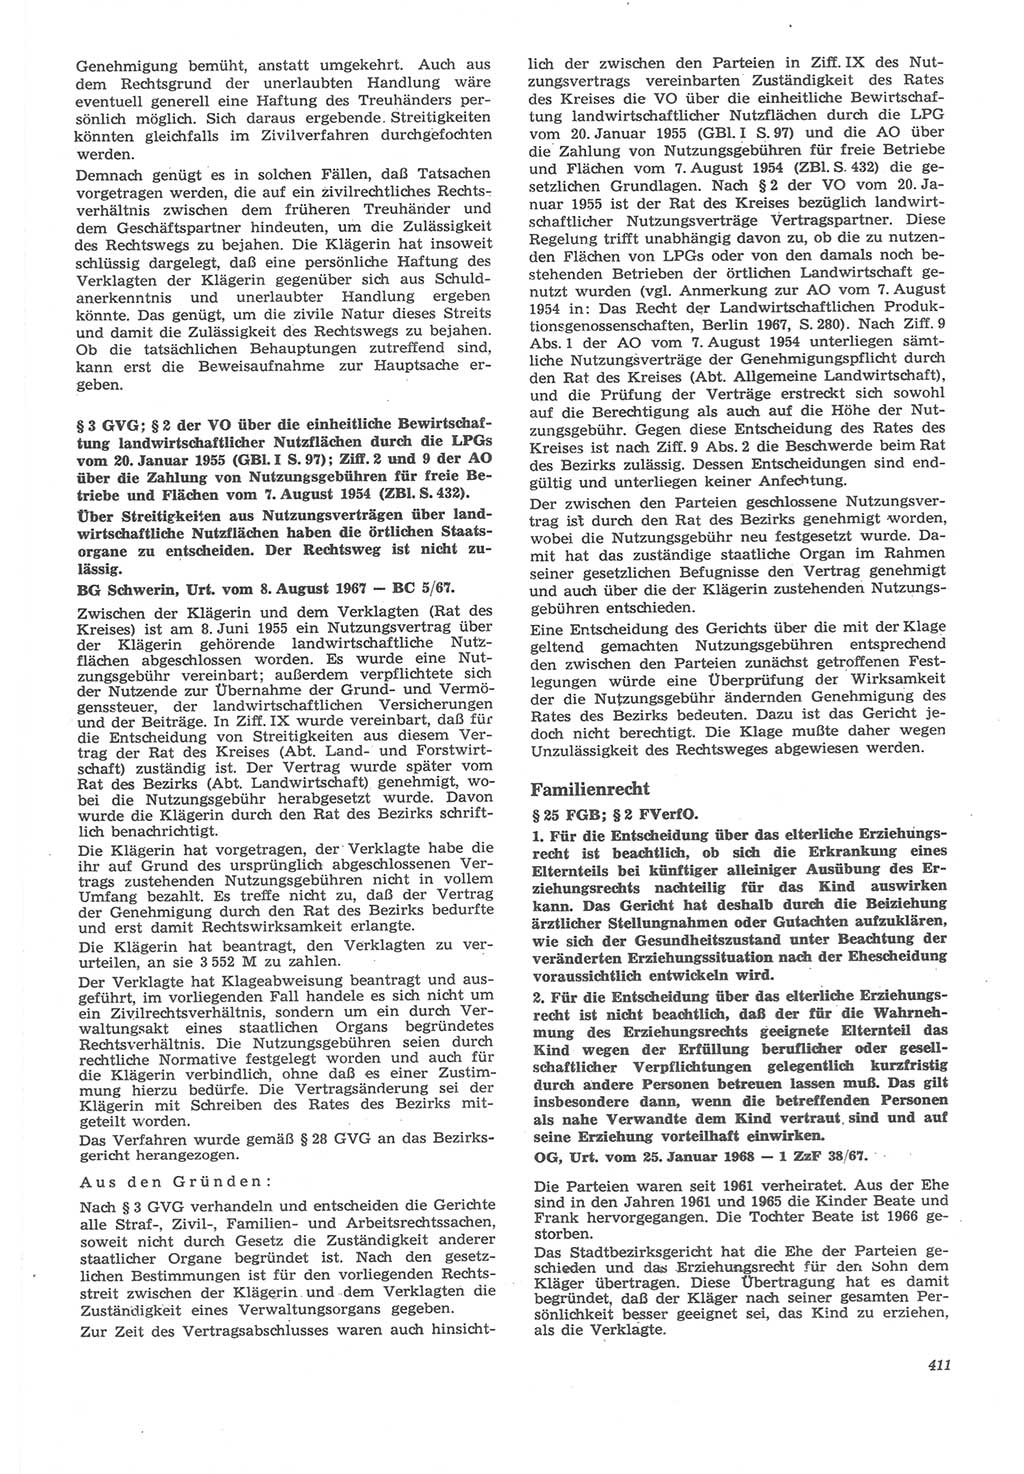 Neue Justiz (NJ), Zeitschrift für Recht und Rechtswissenschaft [Deutsche Demokratische Republik (DDR)], 22. Jahrgang 1968, Seite 411 (NJ DDR 1968, S. 411)